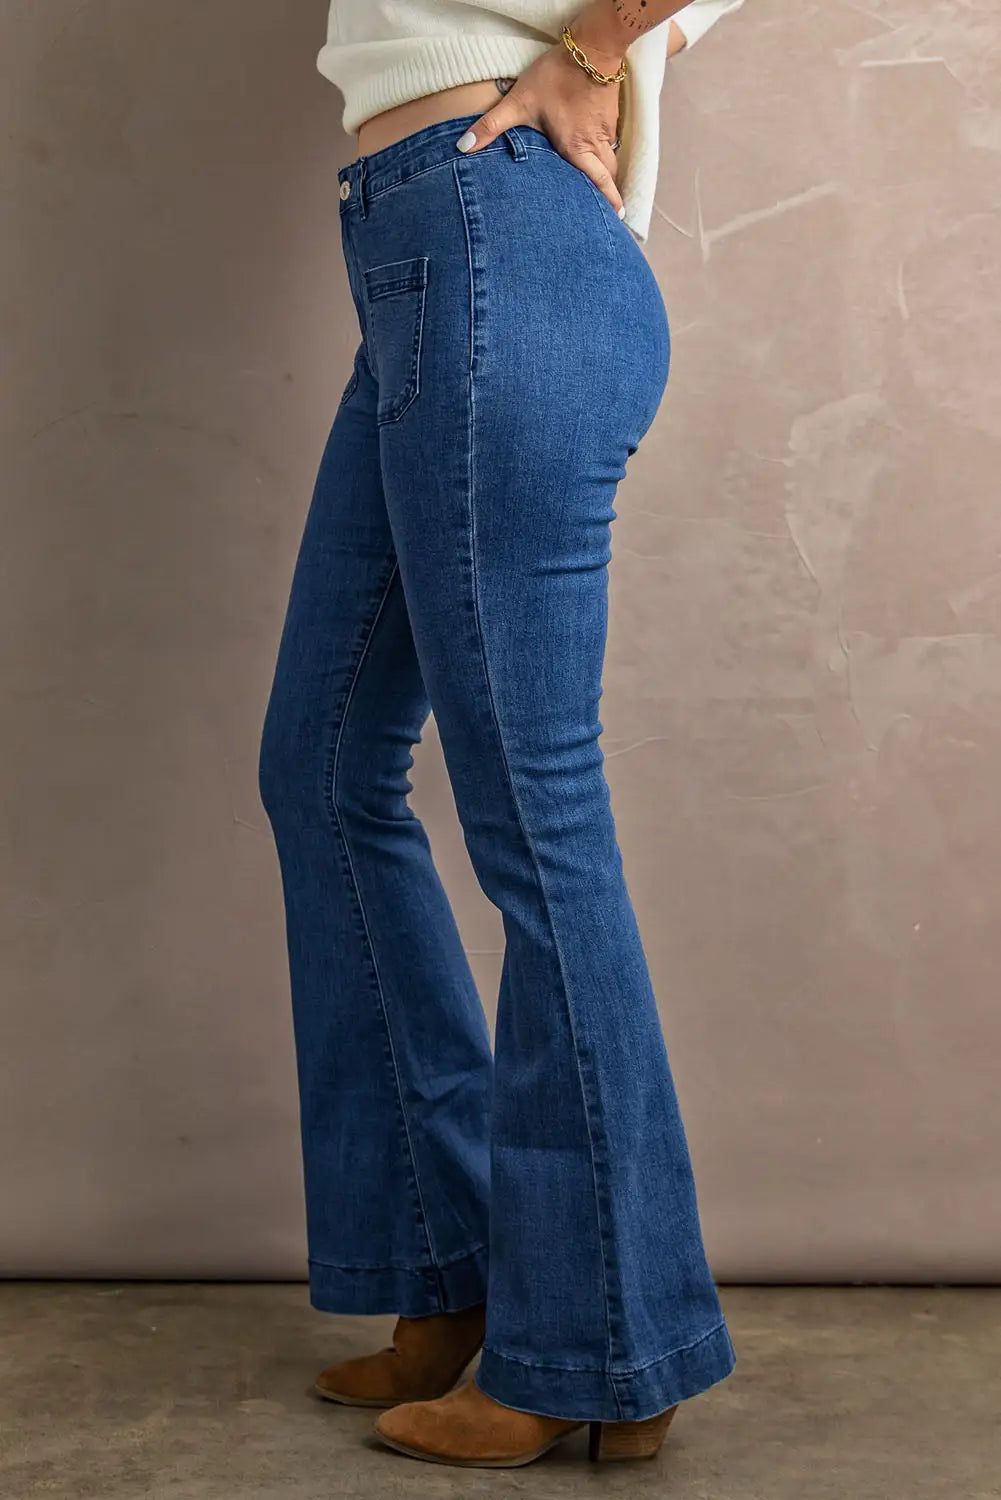 Blue bell bottom denim pants - jeans